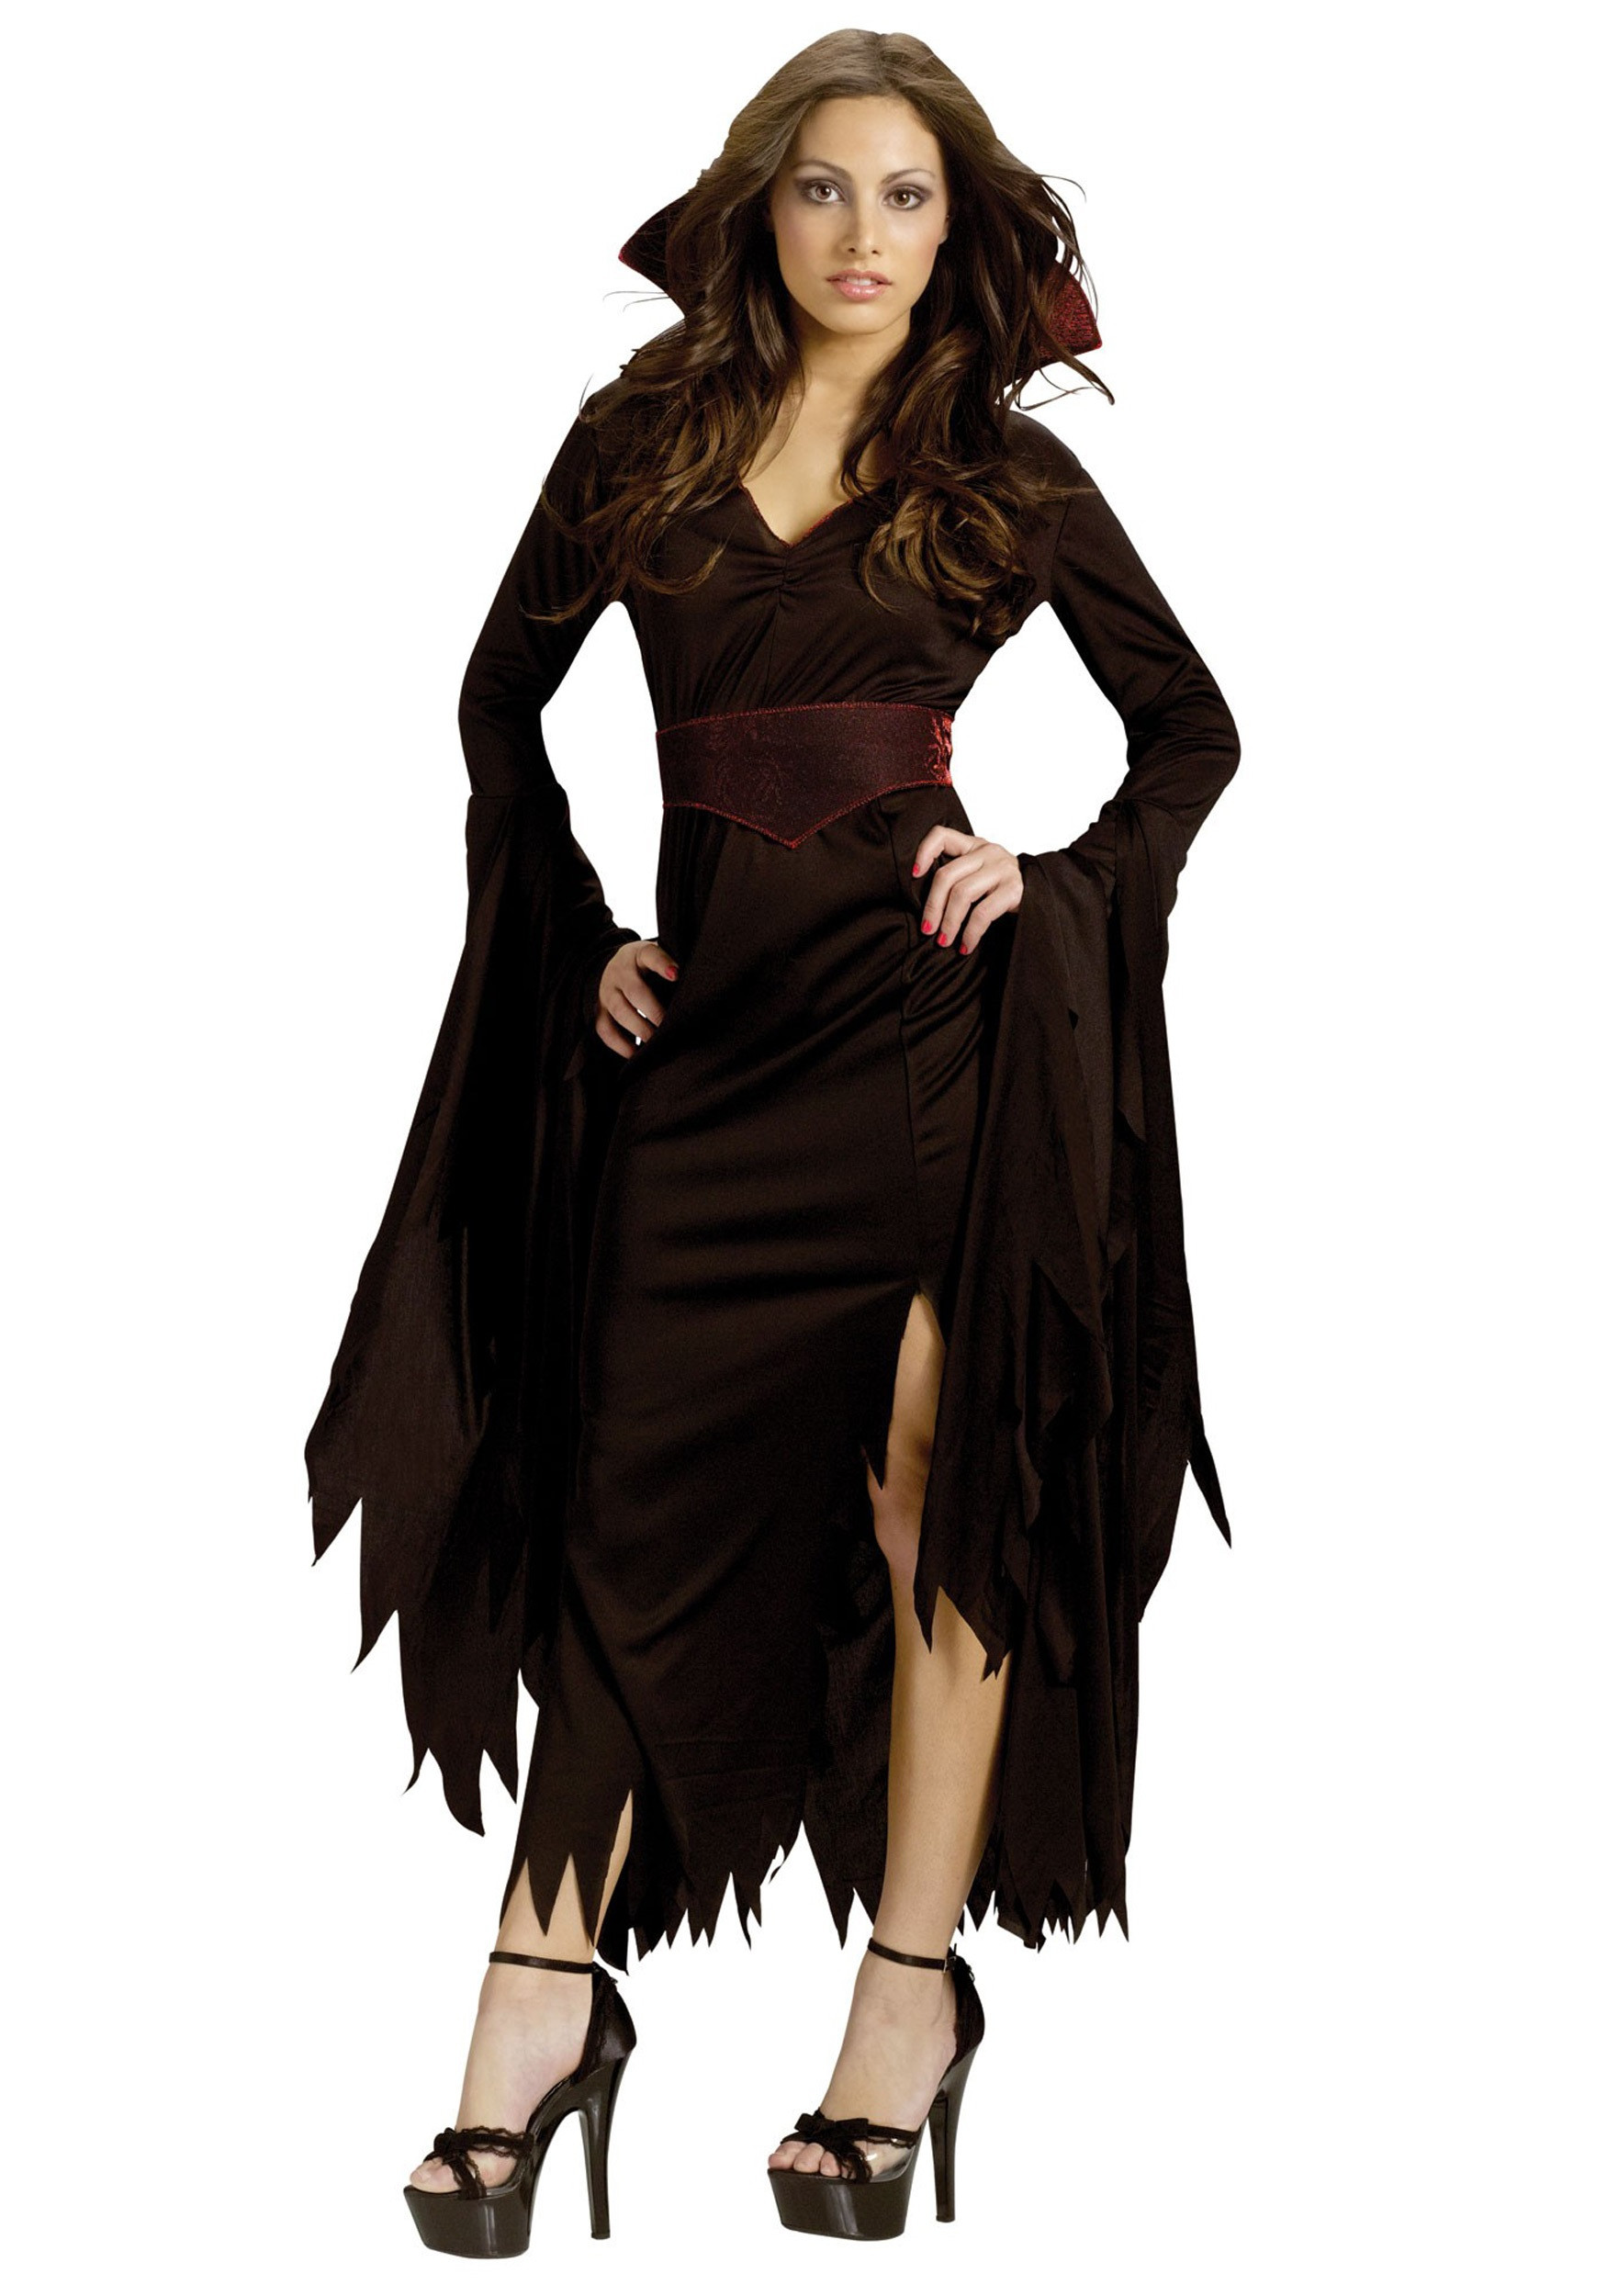 DIY Vampire Costume Female
 Women s Gothic Vamp Costume